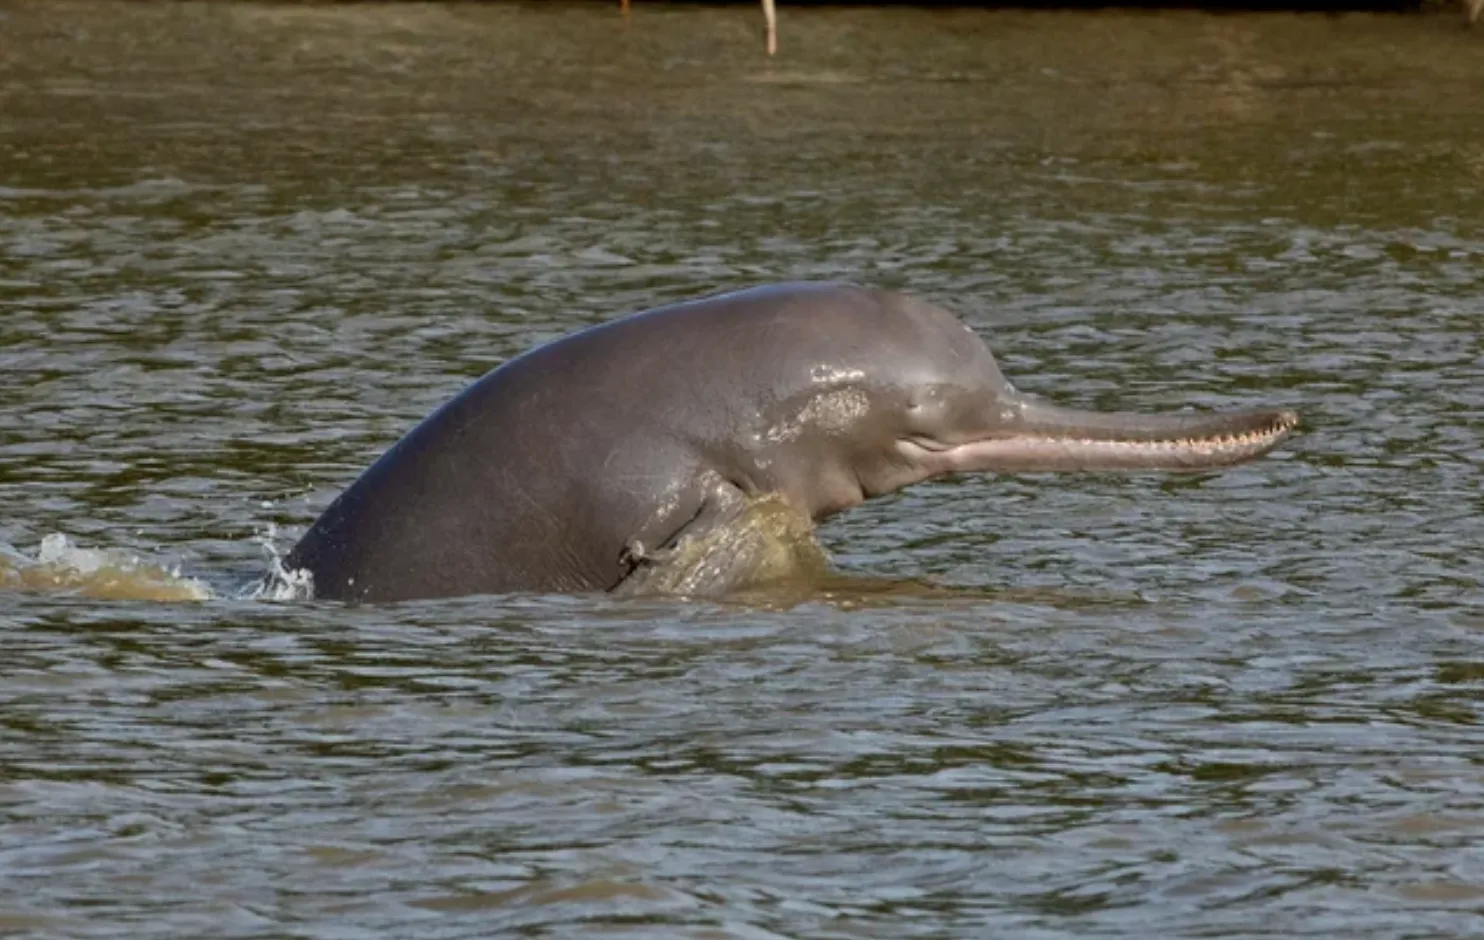 Дельфин реки Ганг встречается в крупных речных системах Индии, Бангладеш и Непала